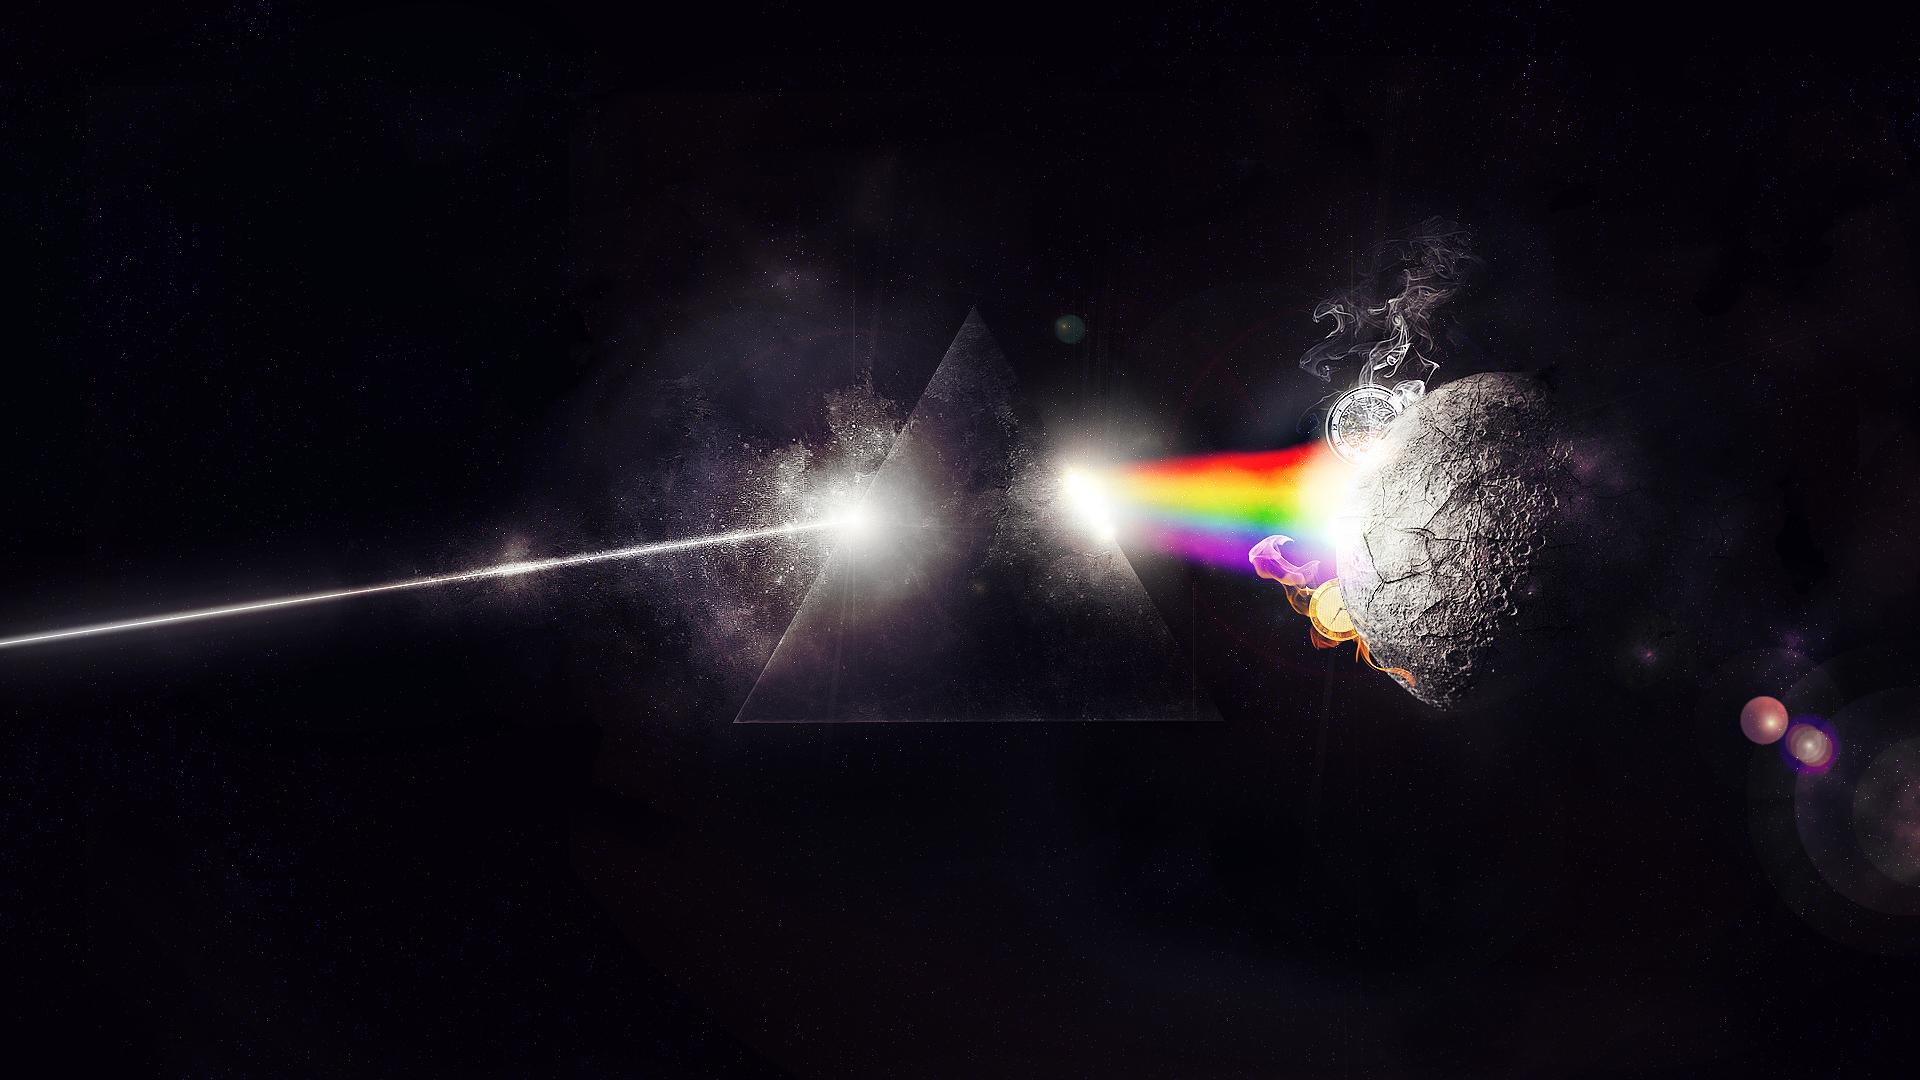 Pink Floyd Dark Side of the Moon Wallpaper Image. HD